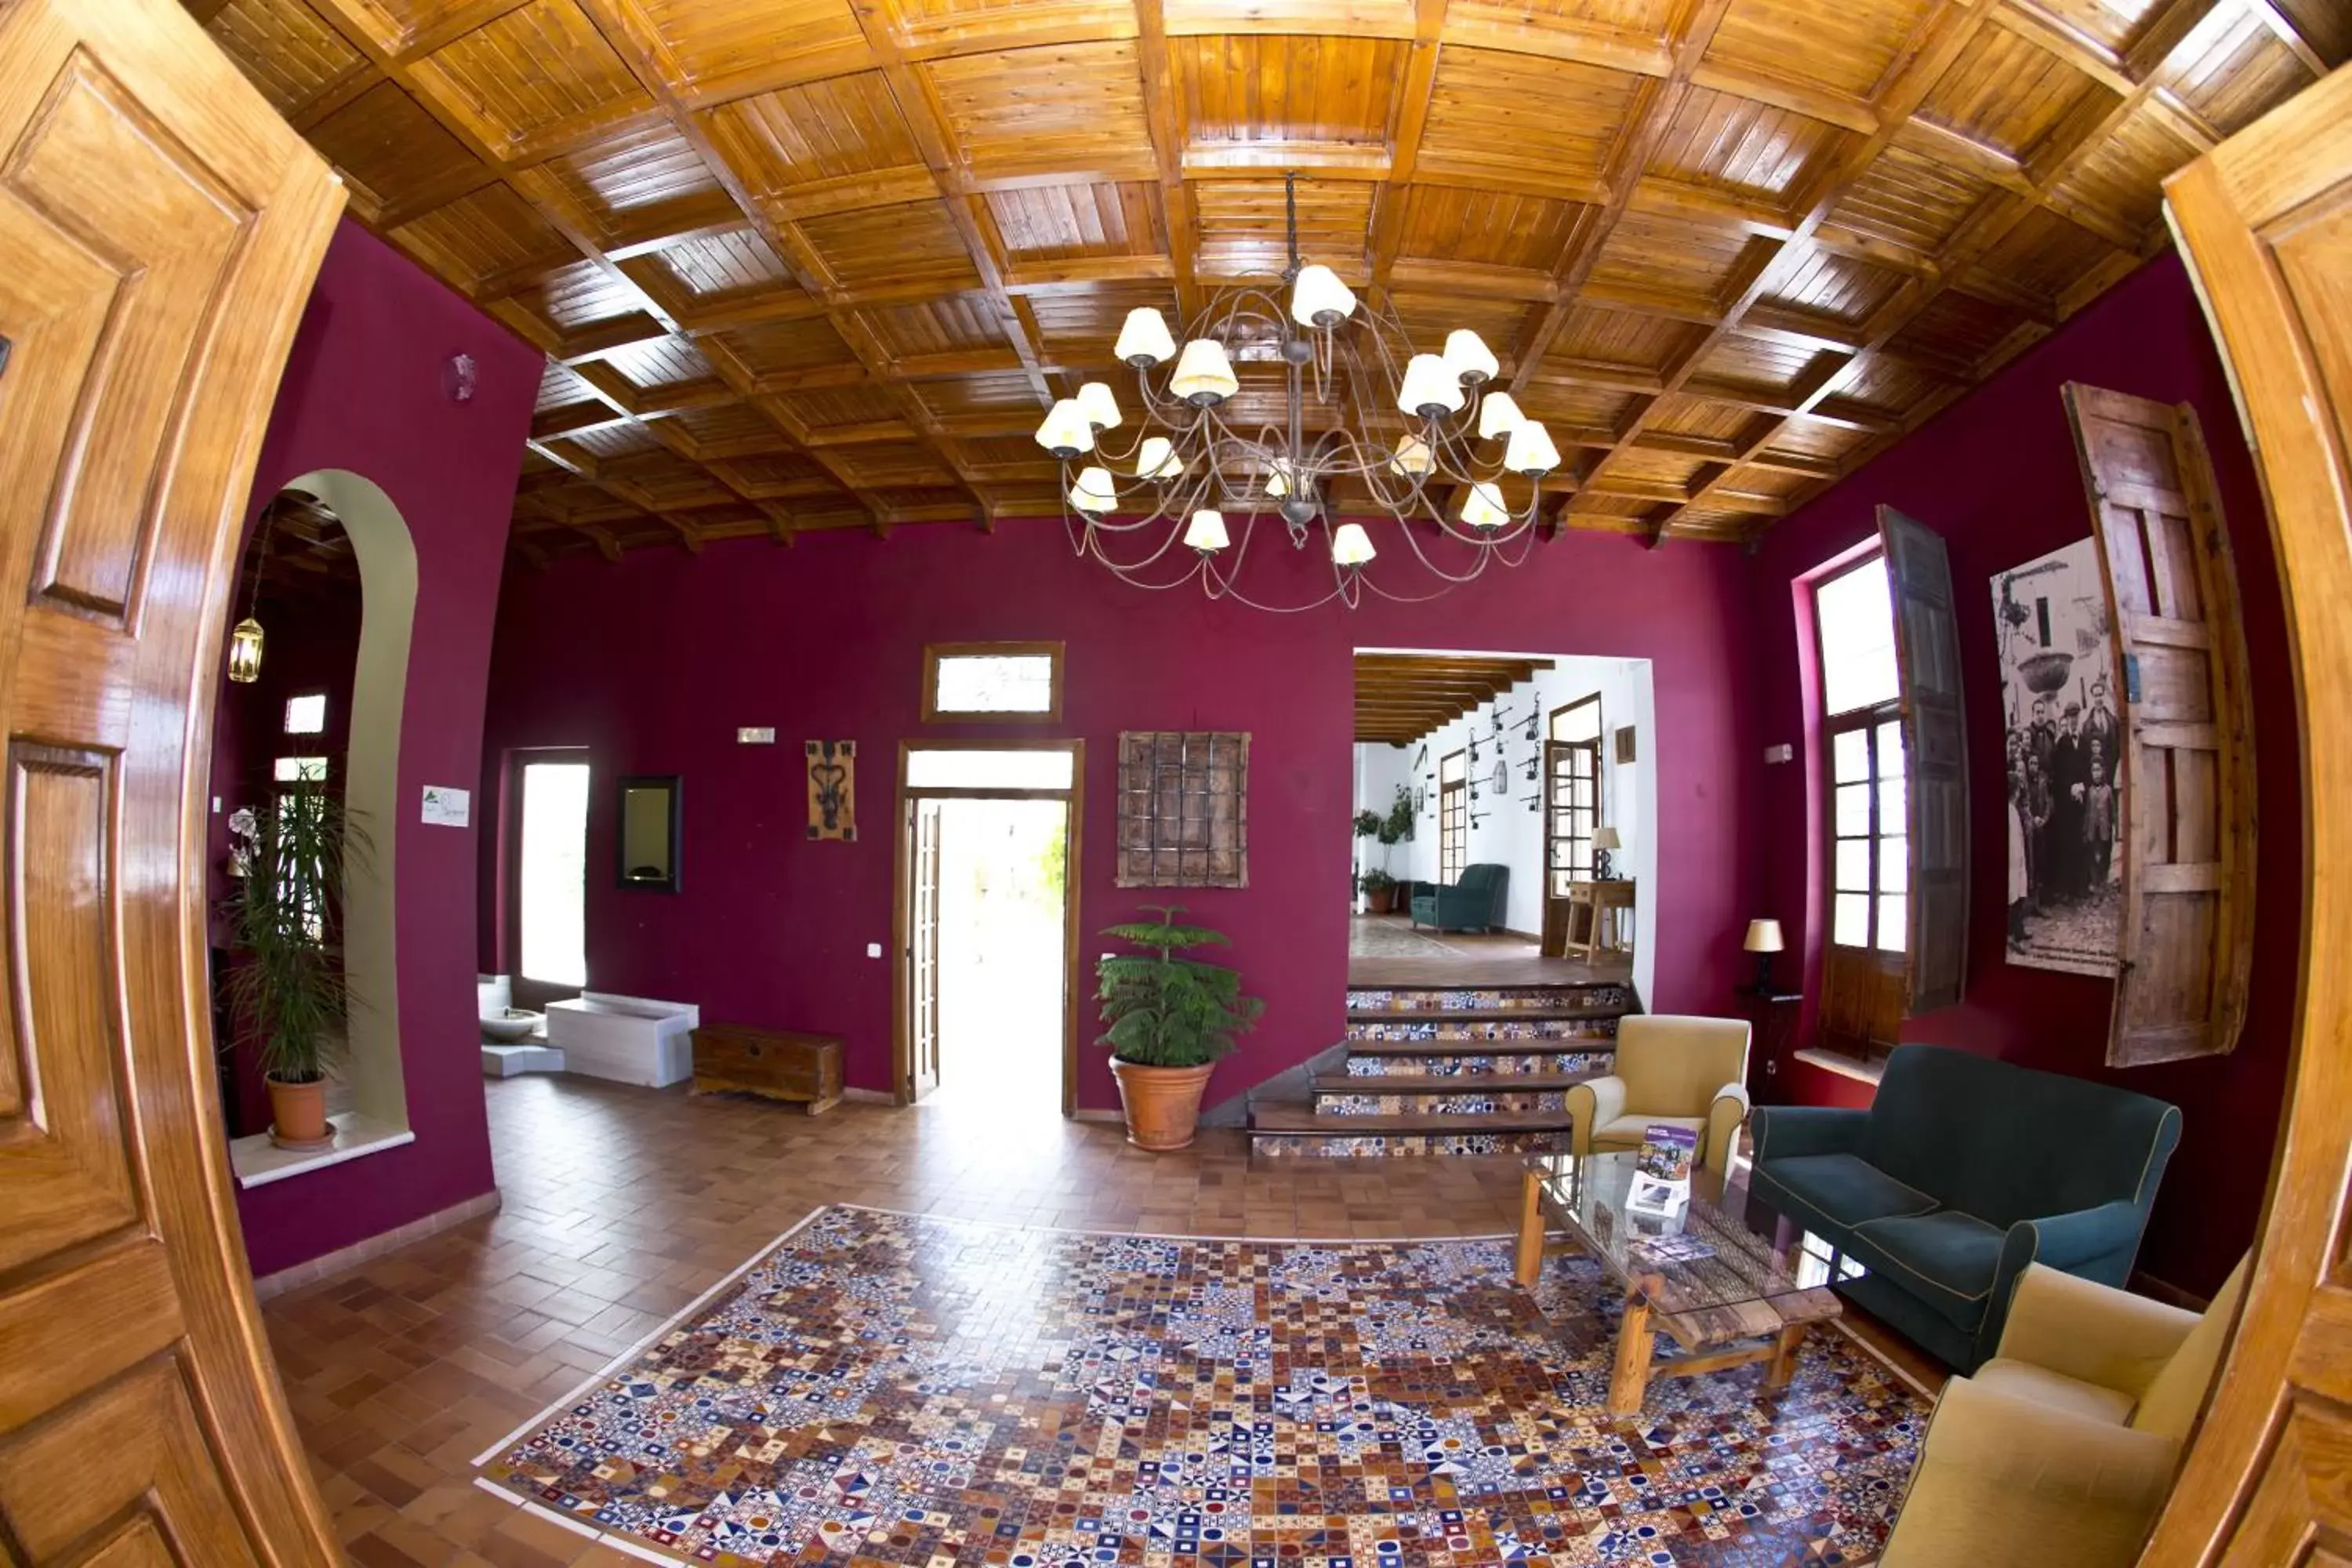 Lobby or reception, Lobby/Reception in Villa Turística de Priego